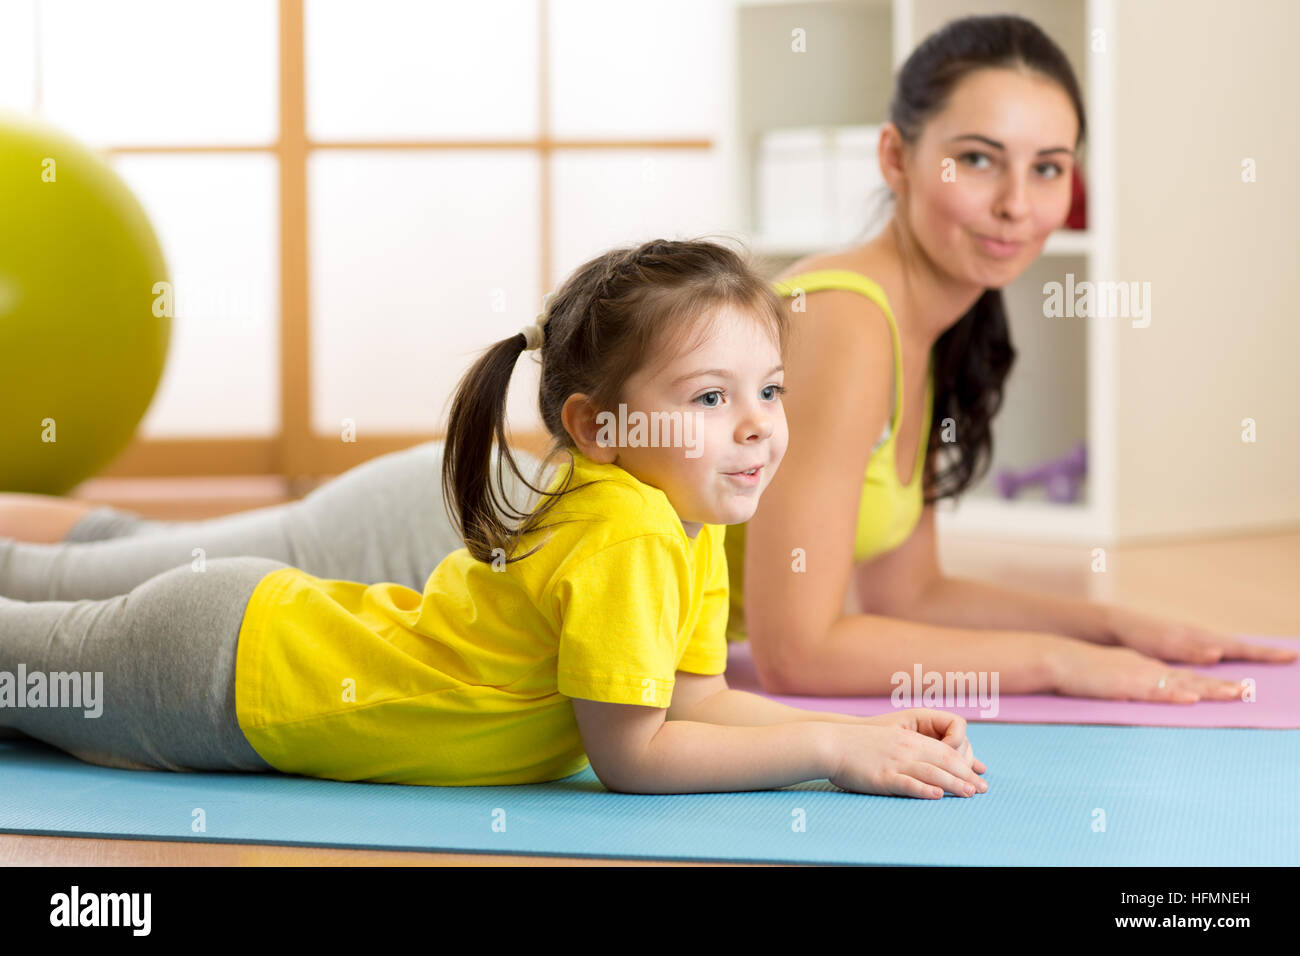 La vita sana. Famiglia - la madre e il bambino ragazza esercitare insieme Foto Stock